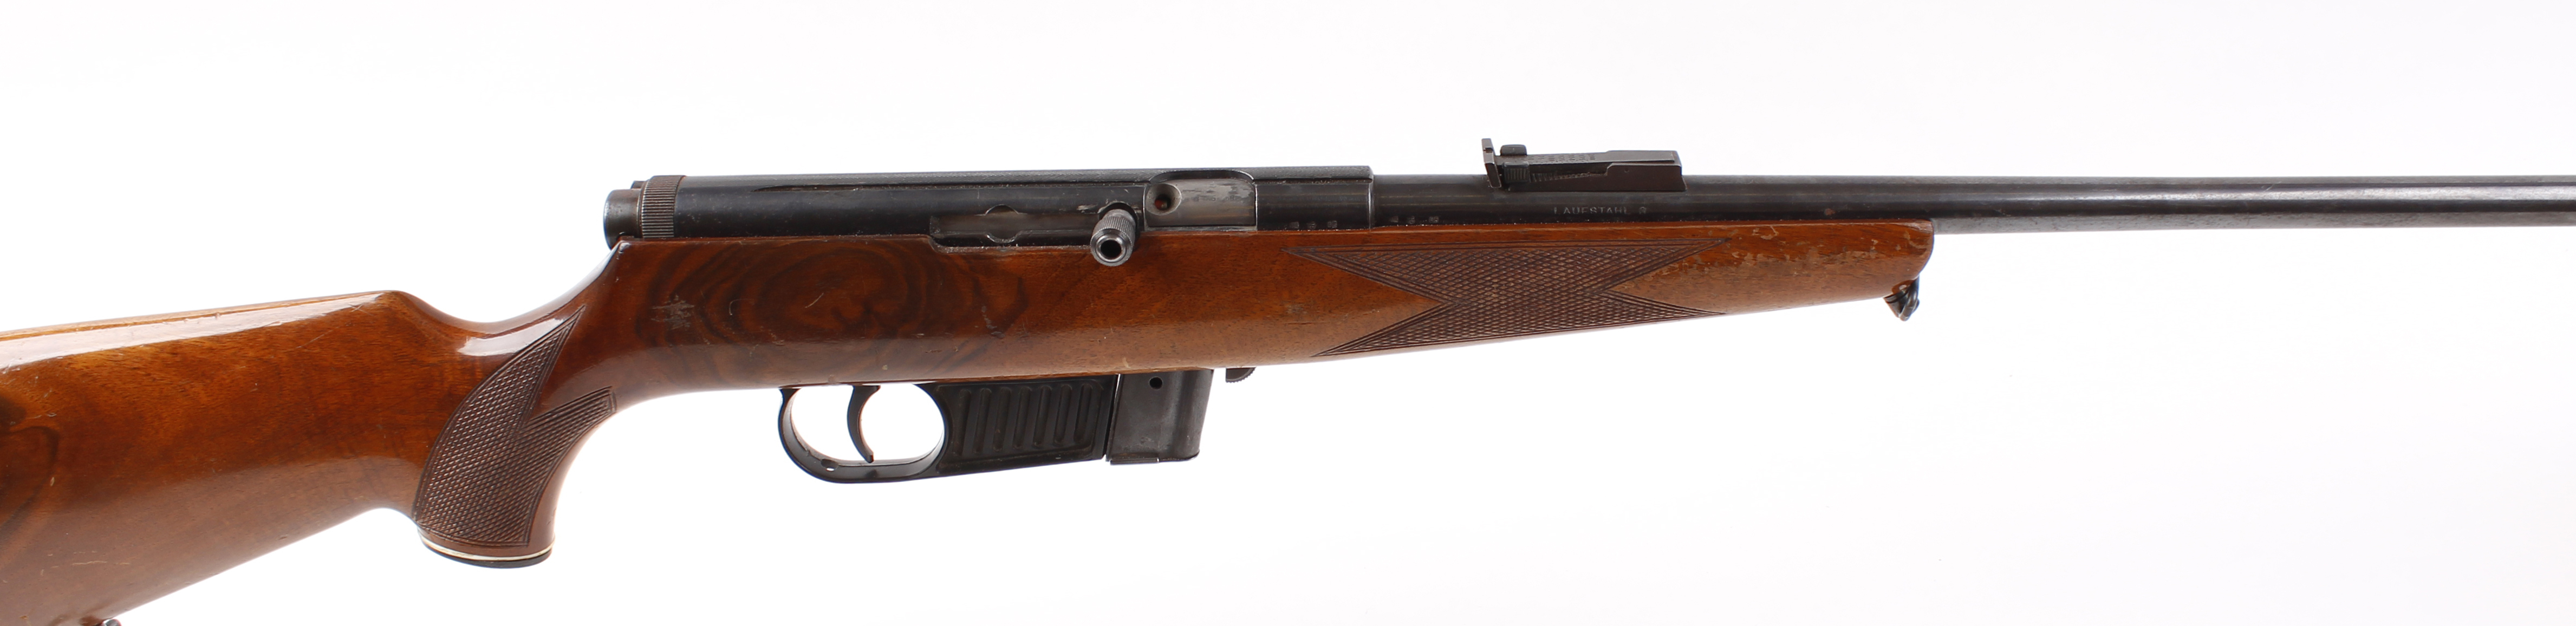 S1 .22 Voere (Austria) semi automatic rifle, 21 ins threaded barrel, 10 shot magazine, semi pistol